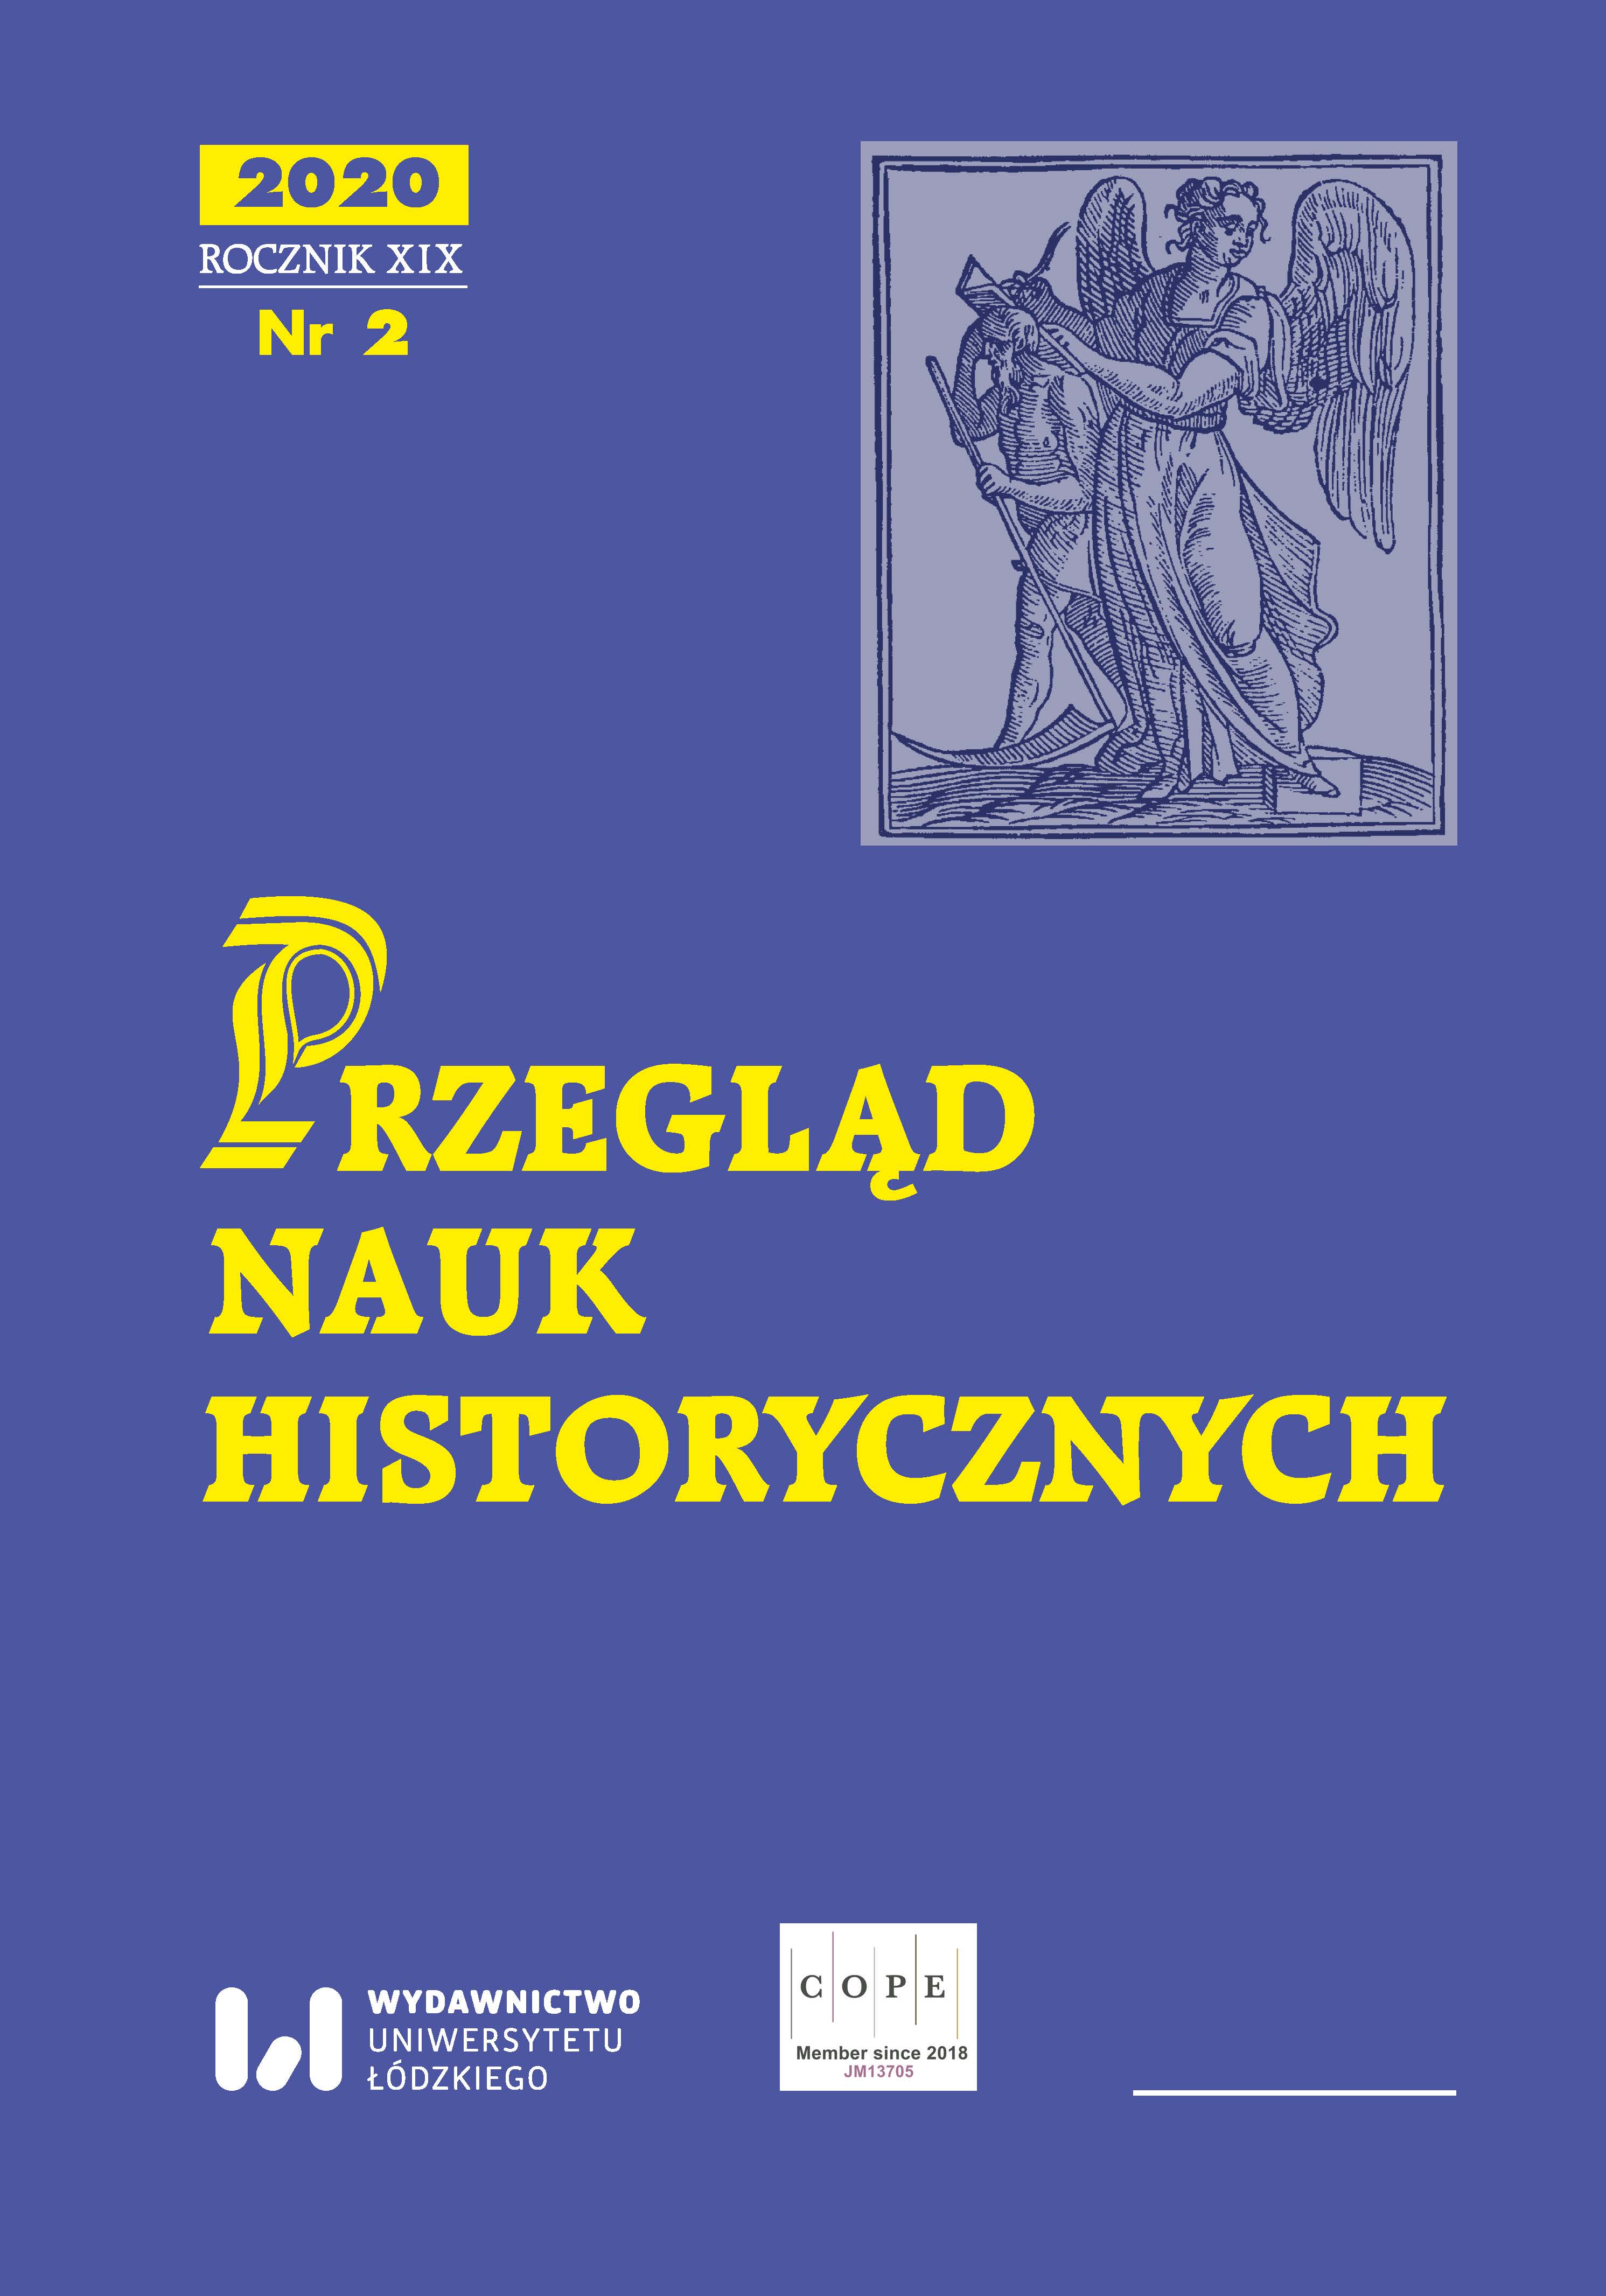 Krąg rodzinny Katarzyny z Sienna Myszkowskiej (zm. 1619), podczaszyny lubelskiej. Studium genealogiczno-obyczajowe